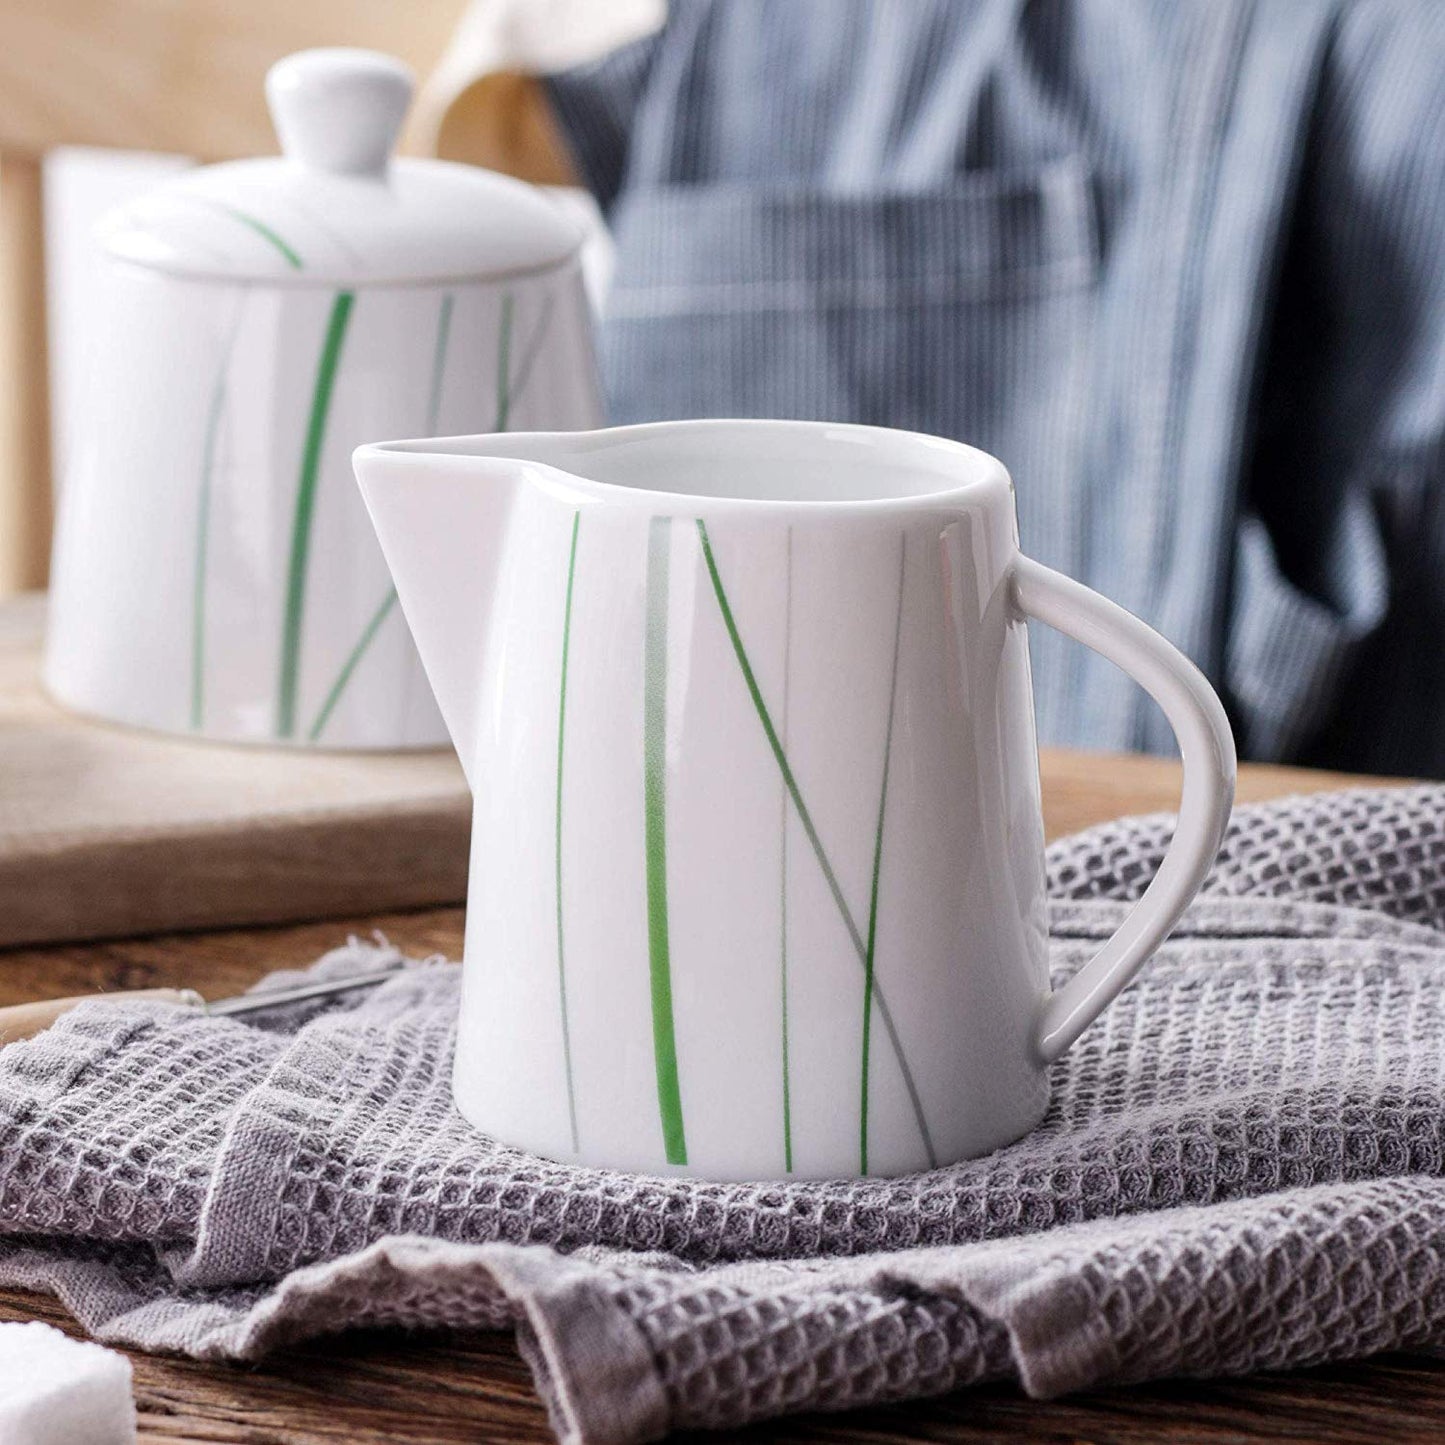 AVIVA Ceramic Porcelain Milk Cream Serving Jug Set Coffee&Tea Creamer&Sugar Bowl Pot Set for Family&Office - Nordic Side - AVIVA, Bowl, Ceramic, CoffeeTea, Cream, CreamerSugar, FamilyOffice, 